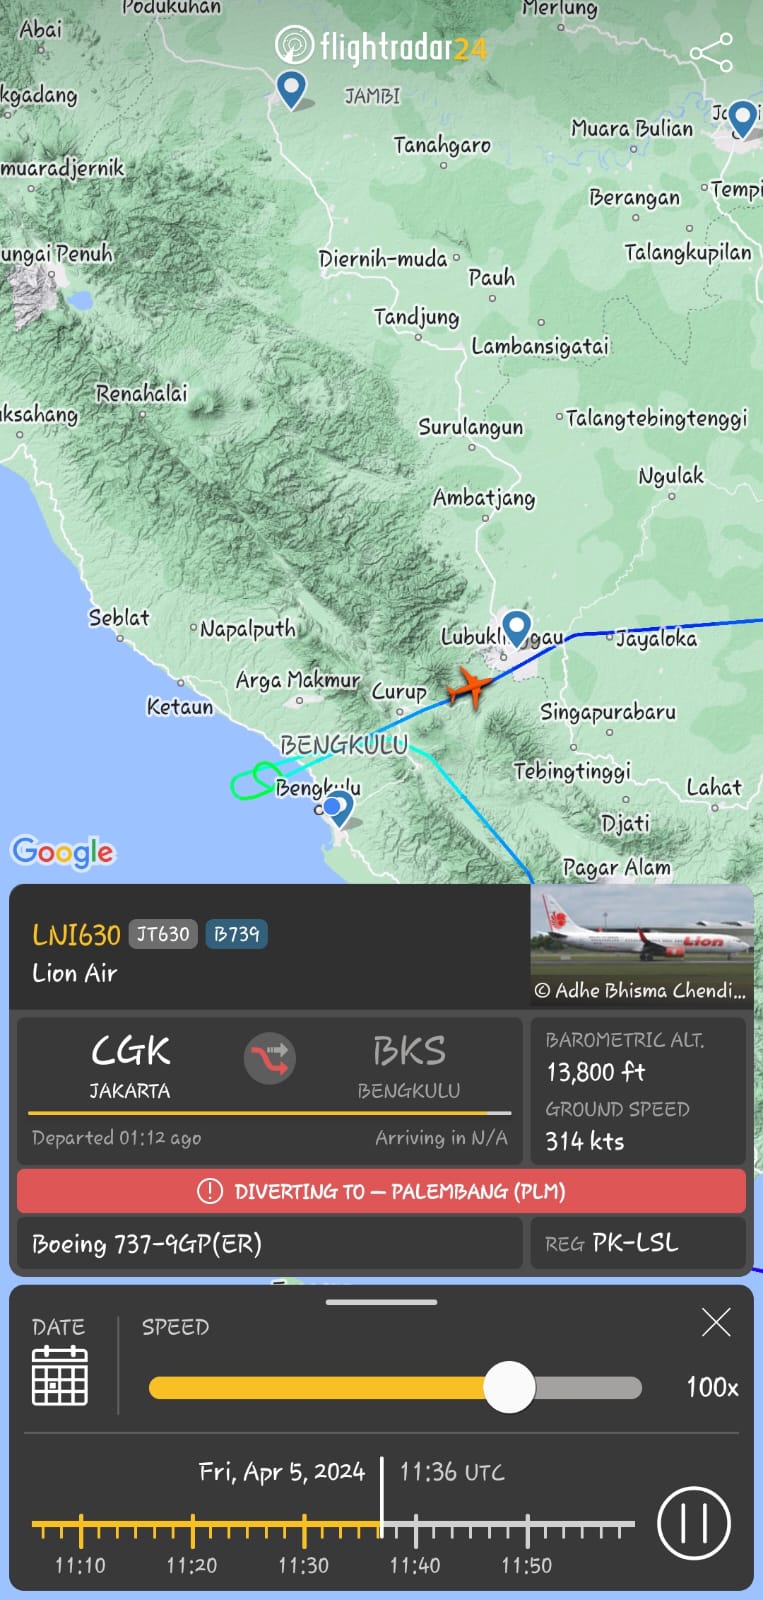 Dua Pesawat Lion Air Sempat Batal Mendarat di Bandara Fatmawati Karena Dampak Cuaca Buruk 